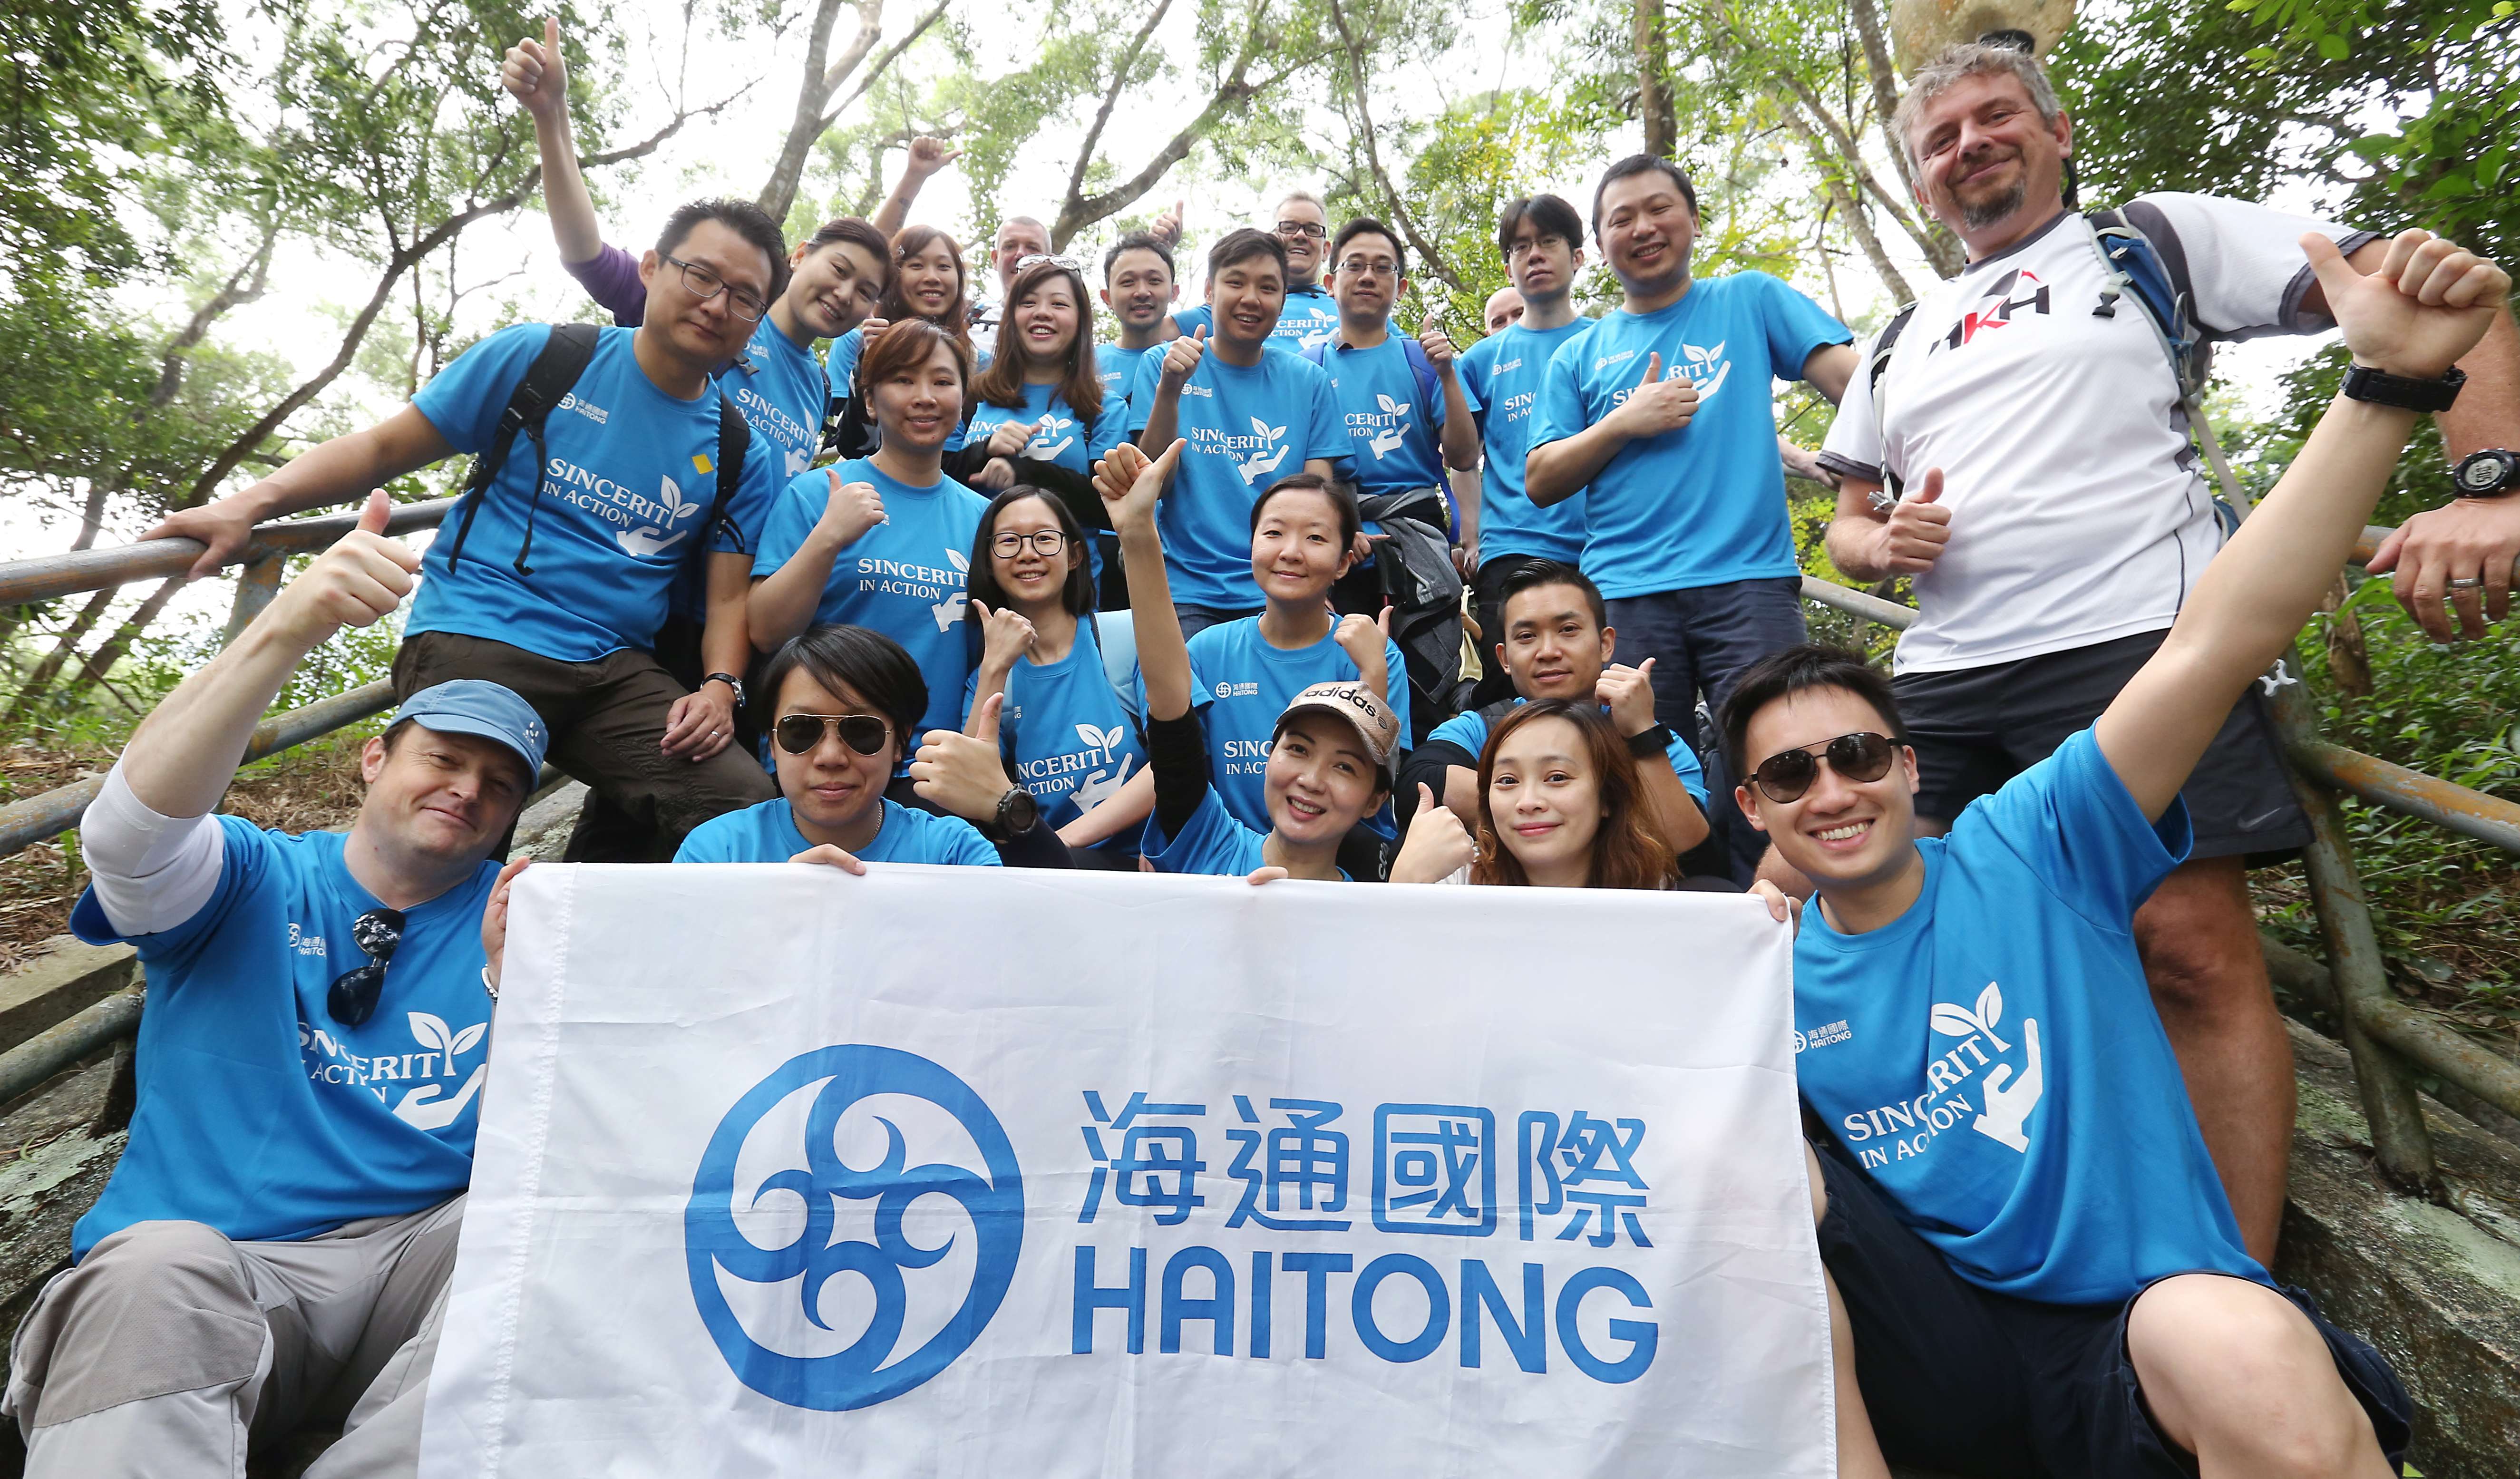 The Haitong hikers in Tai Shui Hang. Photo: Xiaomei Chen